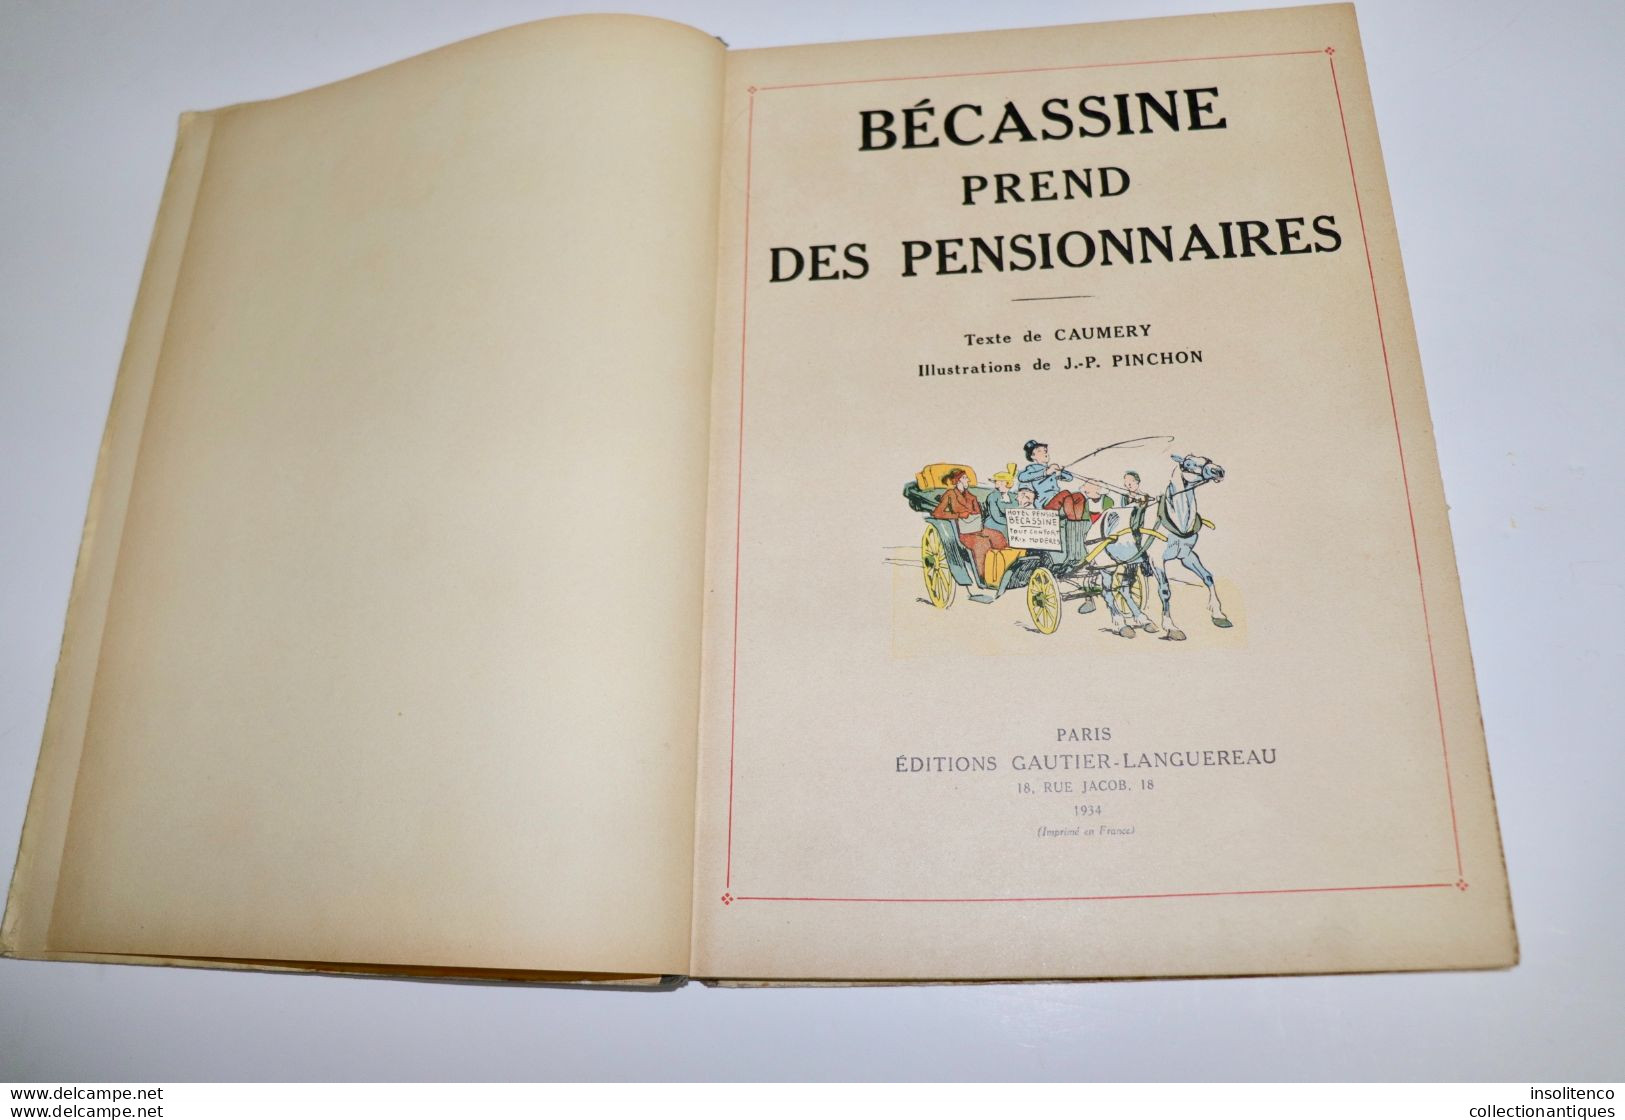 Bécassine Prend Des Pensionnaires - JP Pinchon - Editions Gautier-Langereau - EO 1934 - TBE - Bécassine